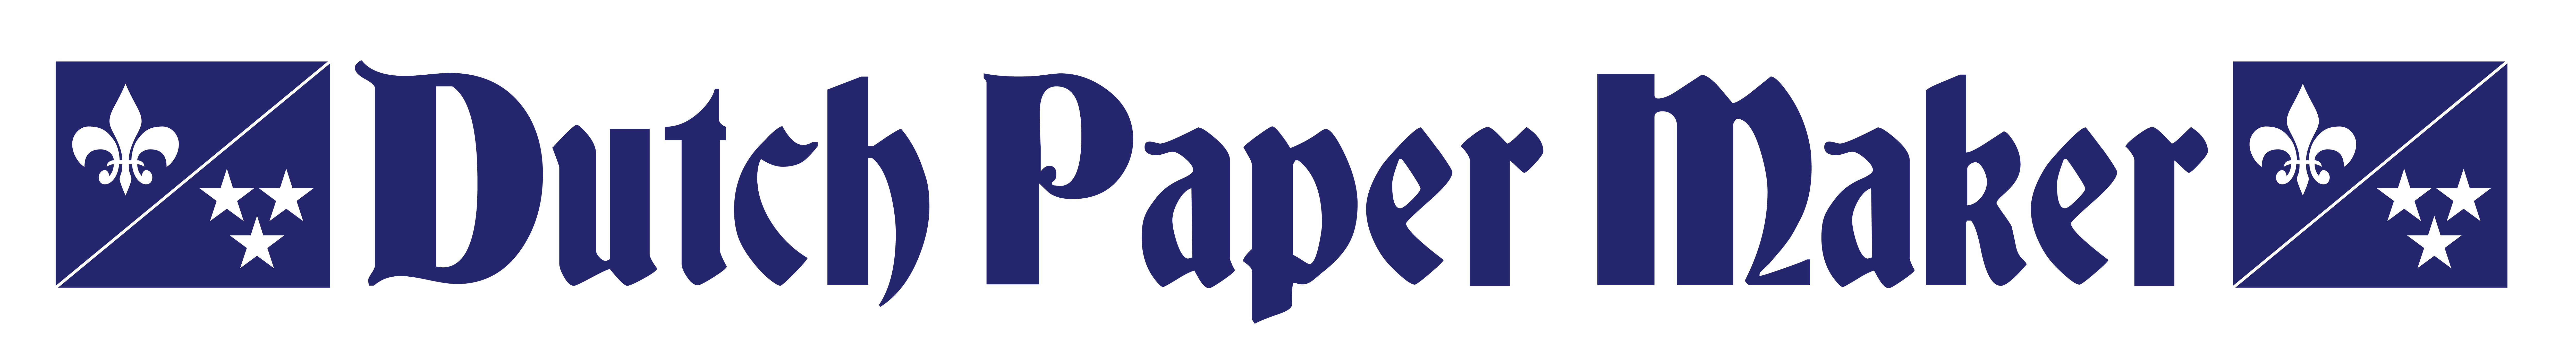 Dutch Paper Maker Banner